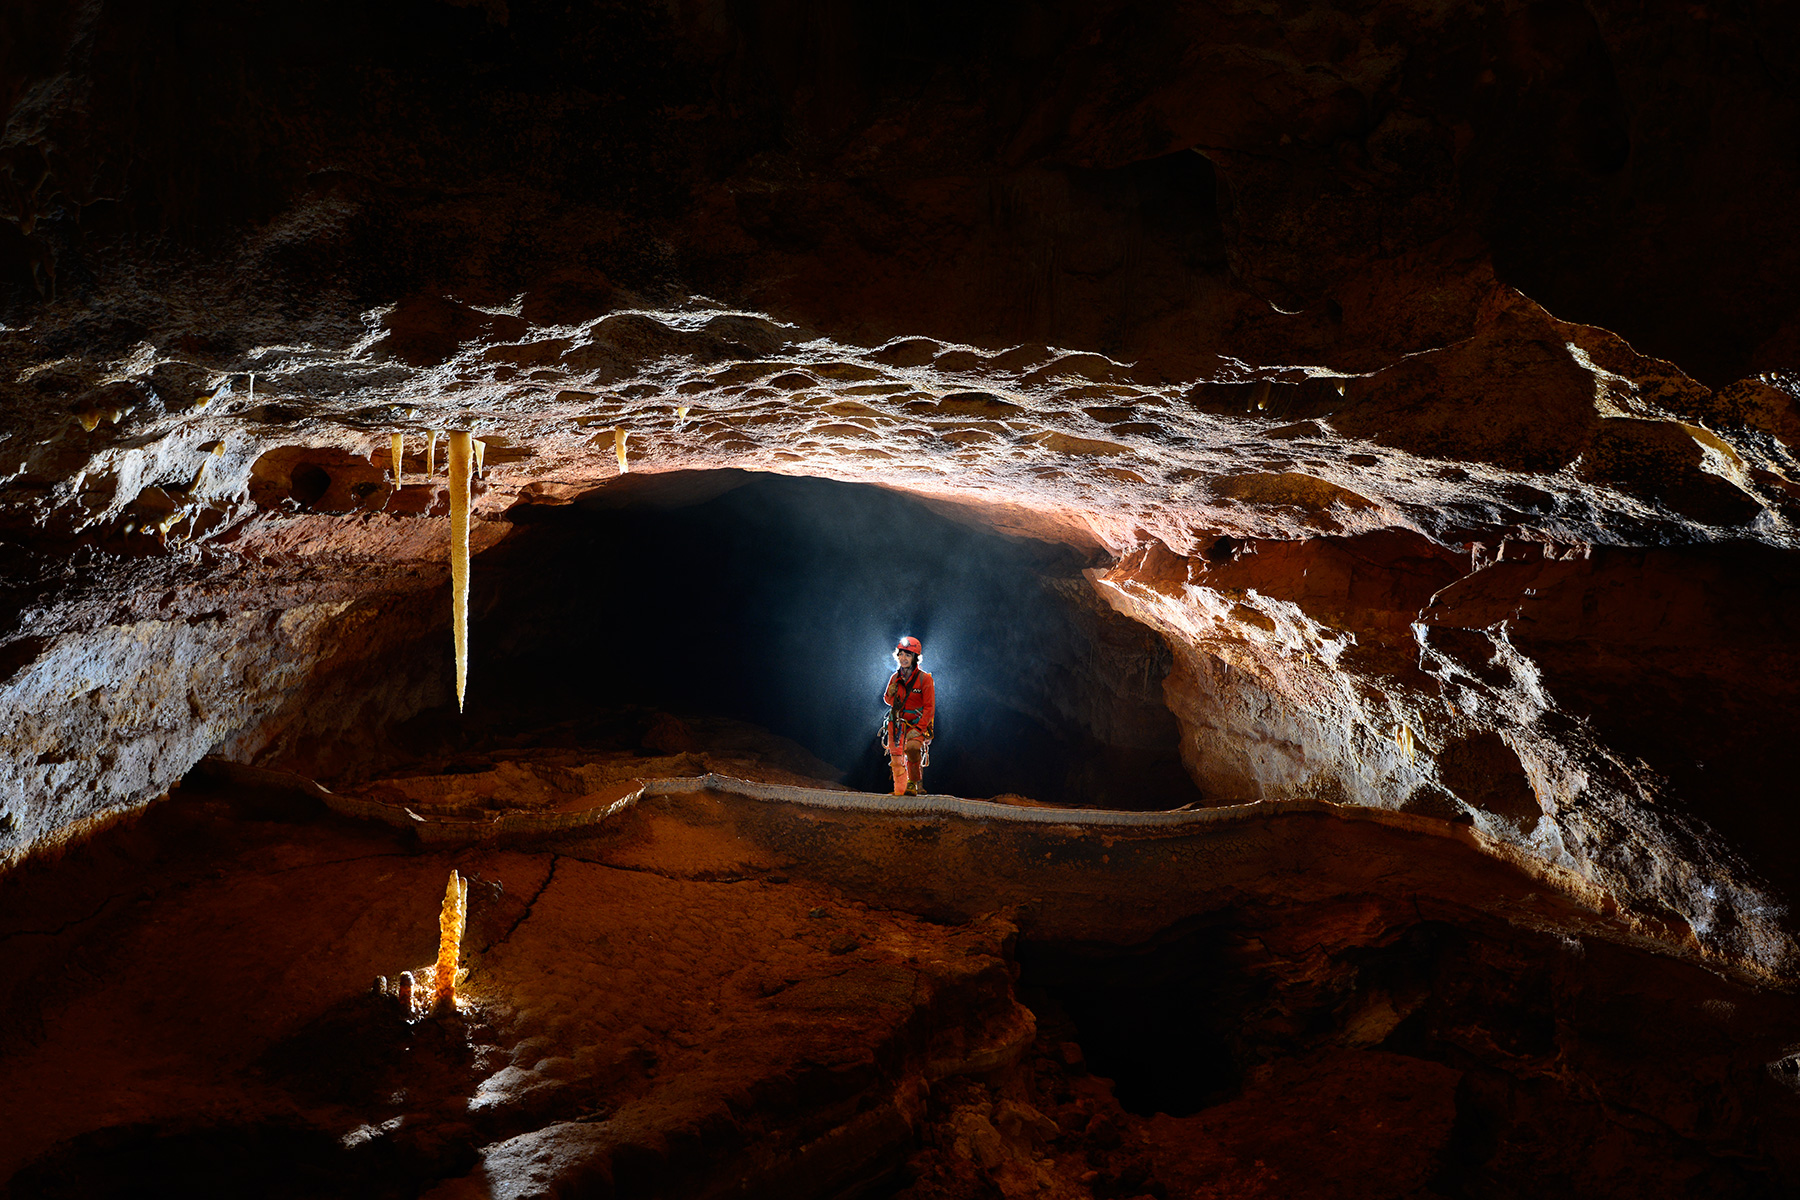 Grotte de Saint-Marcel d'Ardèche (réseau 4) - Galerie barrée par un gour géant (stalactite et stalagmite jaunes en contre jour au premier plan)